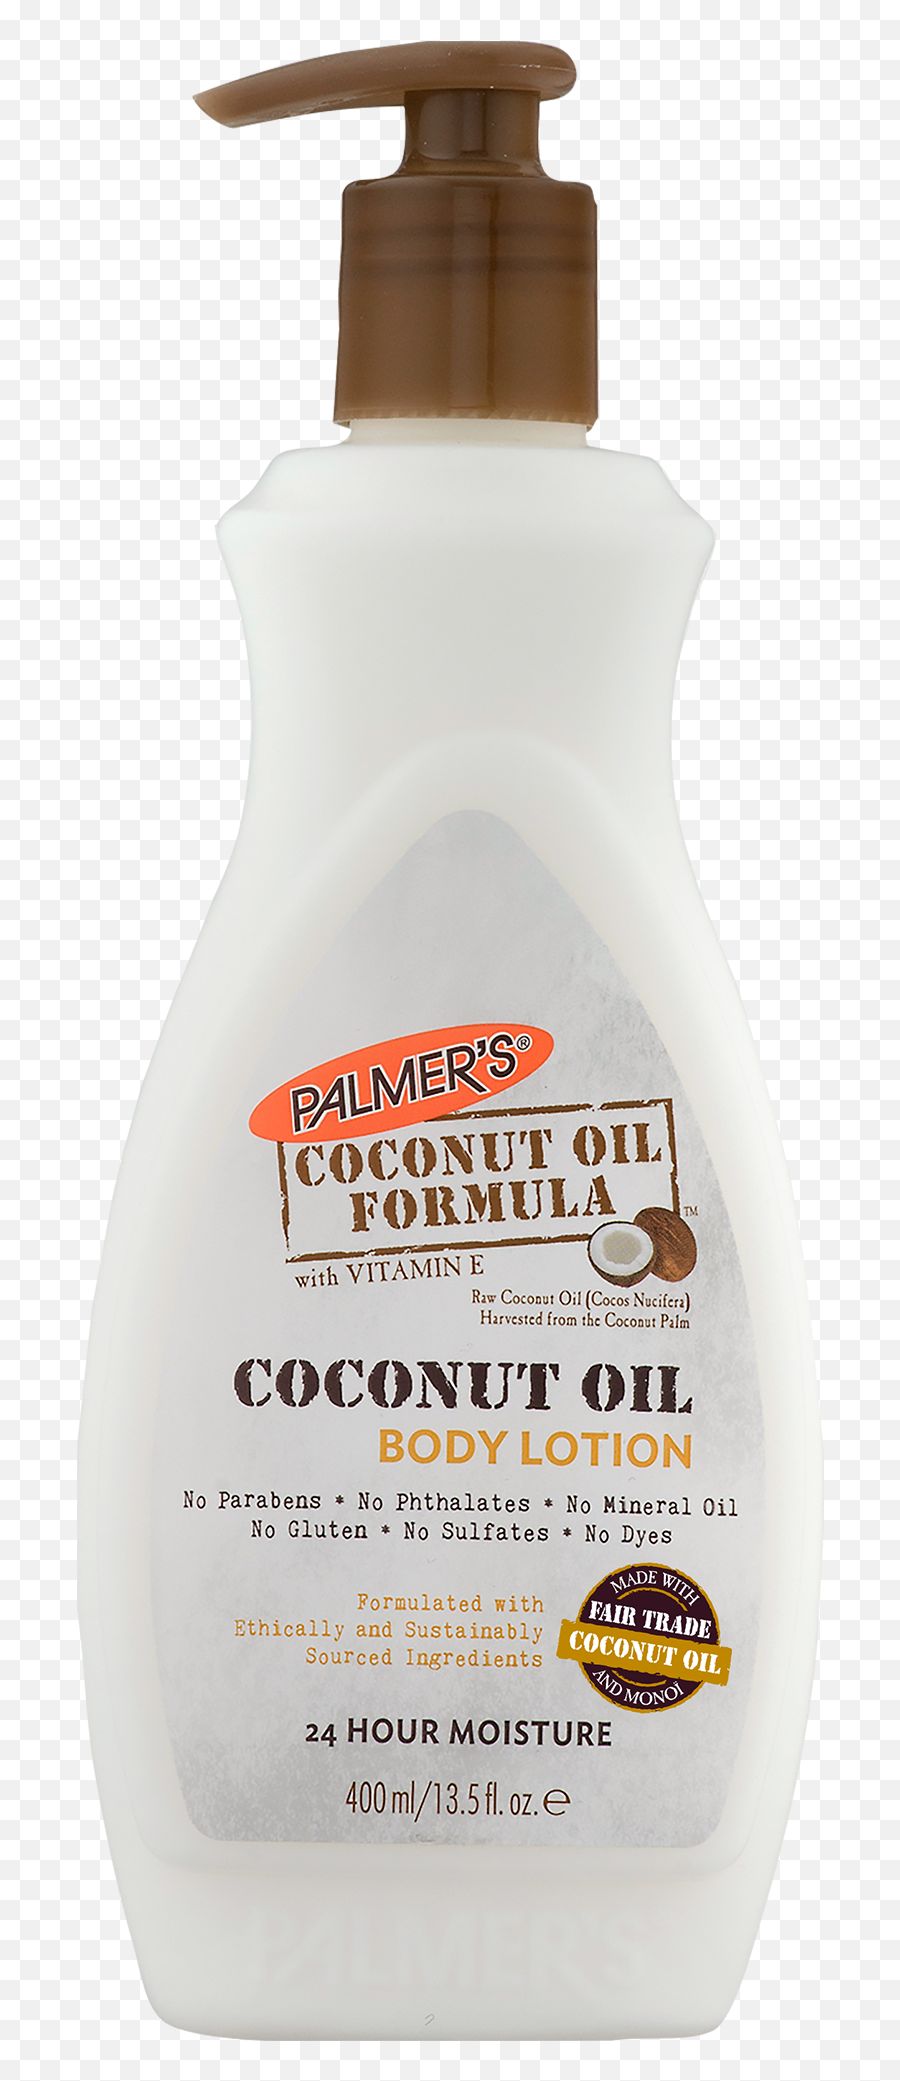 Palmeru0027s Coconut Oil Formula Lotion 135 Fl Oz - Sellables Coconut Oil Formula Body Lotion Emoji,Coconut Watering Hole Emojis